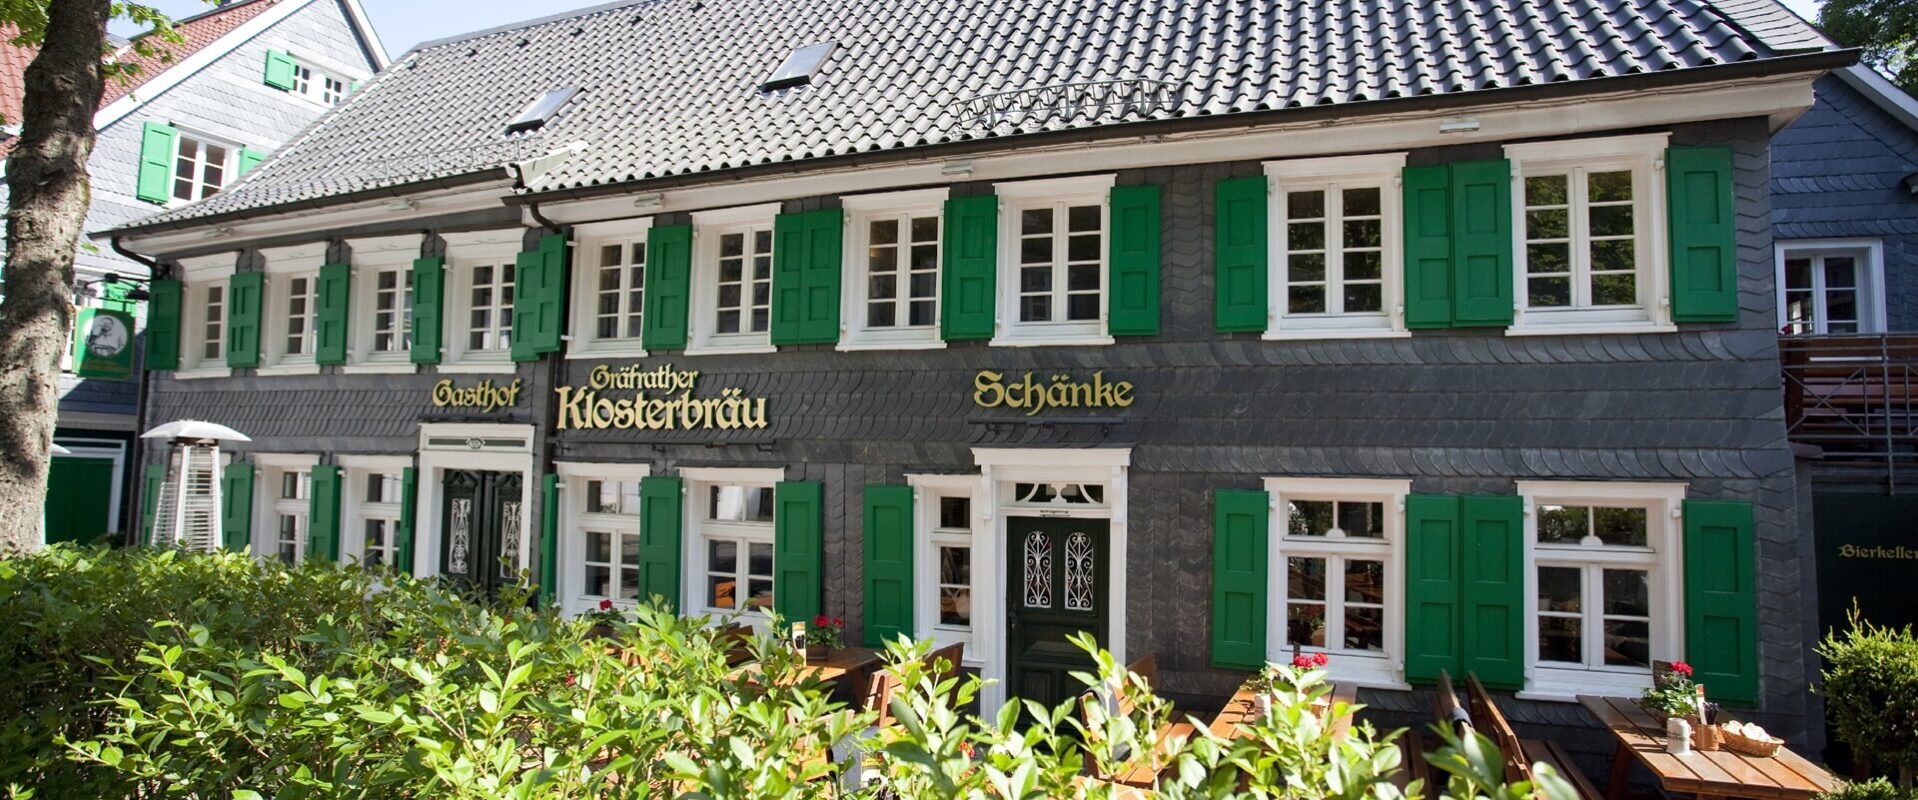 Brauhaus Gräfrather Klosterbräu -Außenansicht Sommer